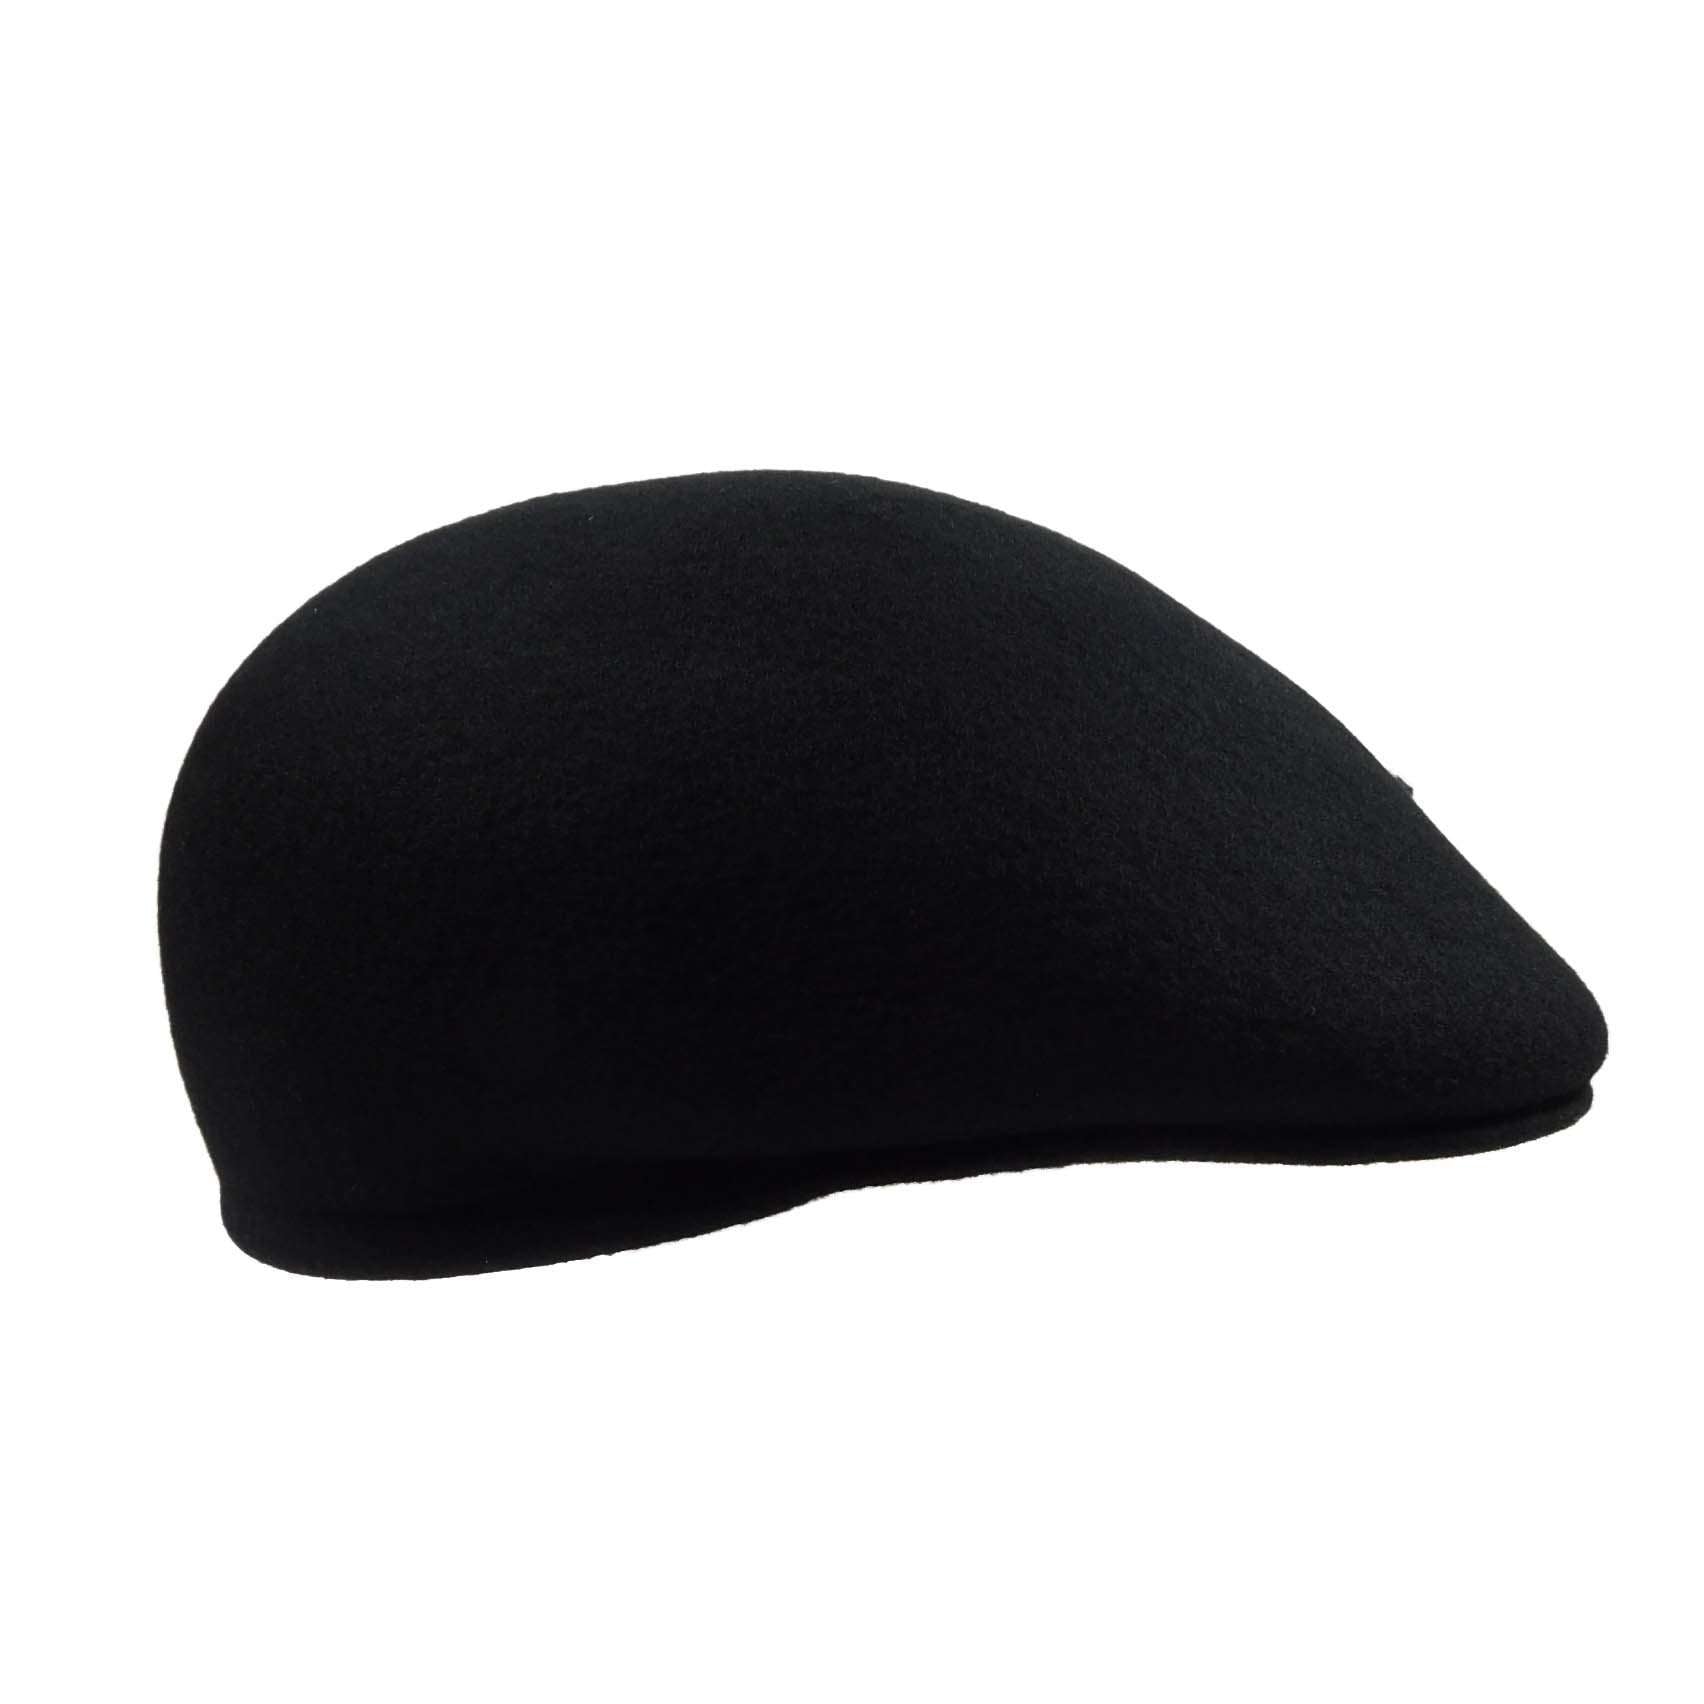 Wool Felt Ascot - Karen Keith Hats Flat Cap Great hats by Karen Keith    